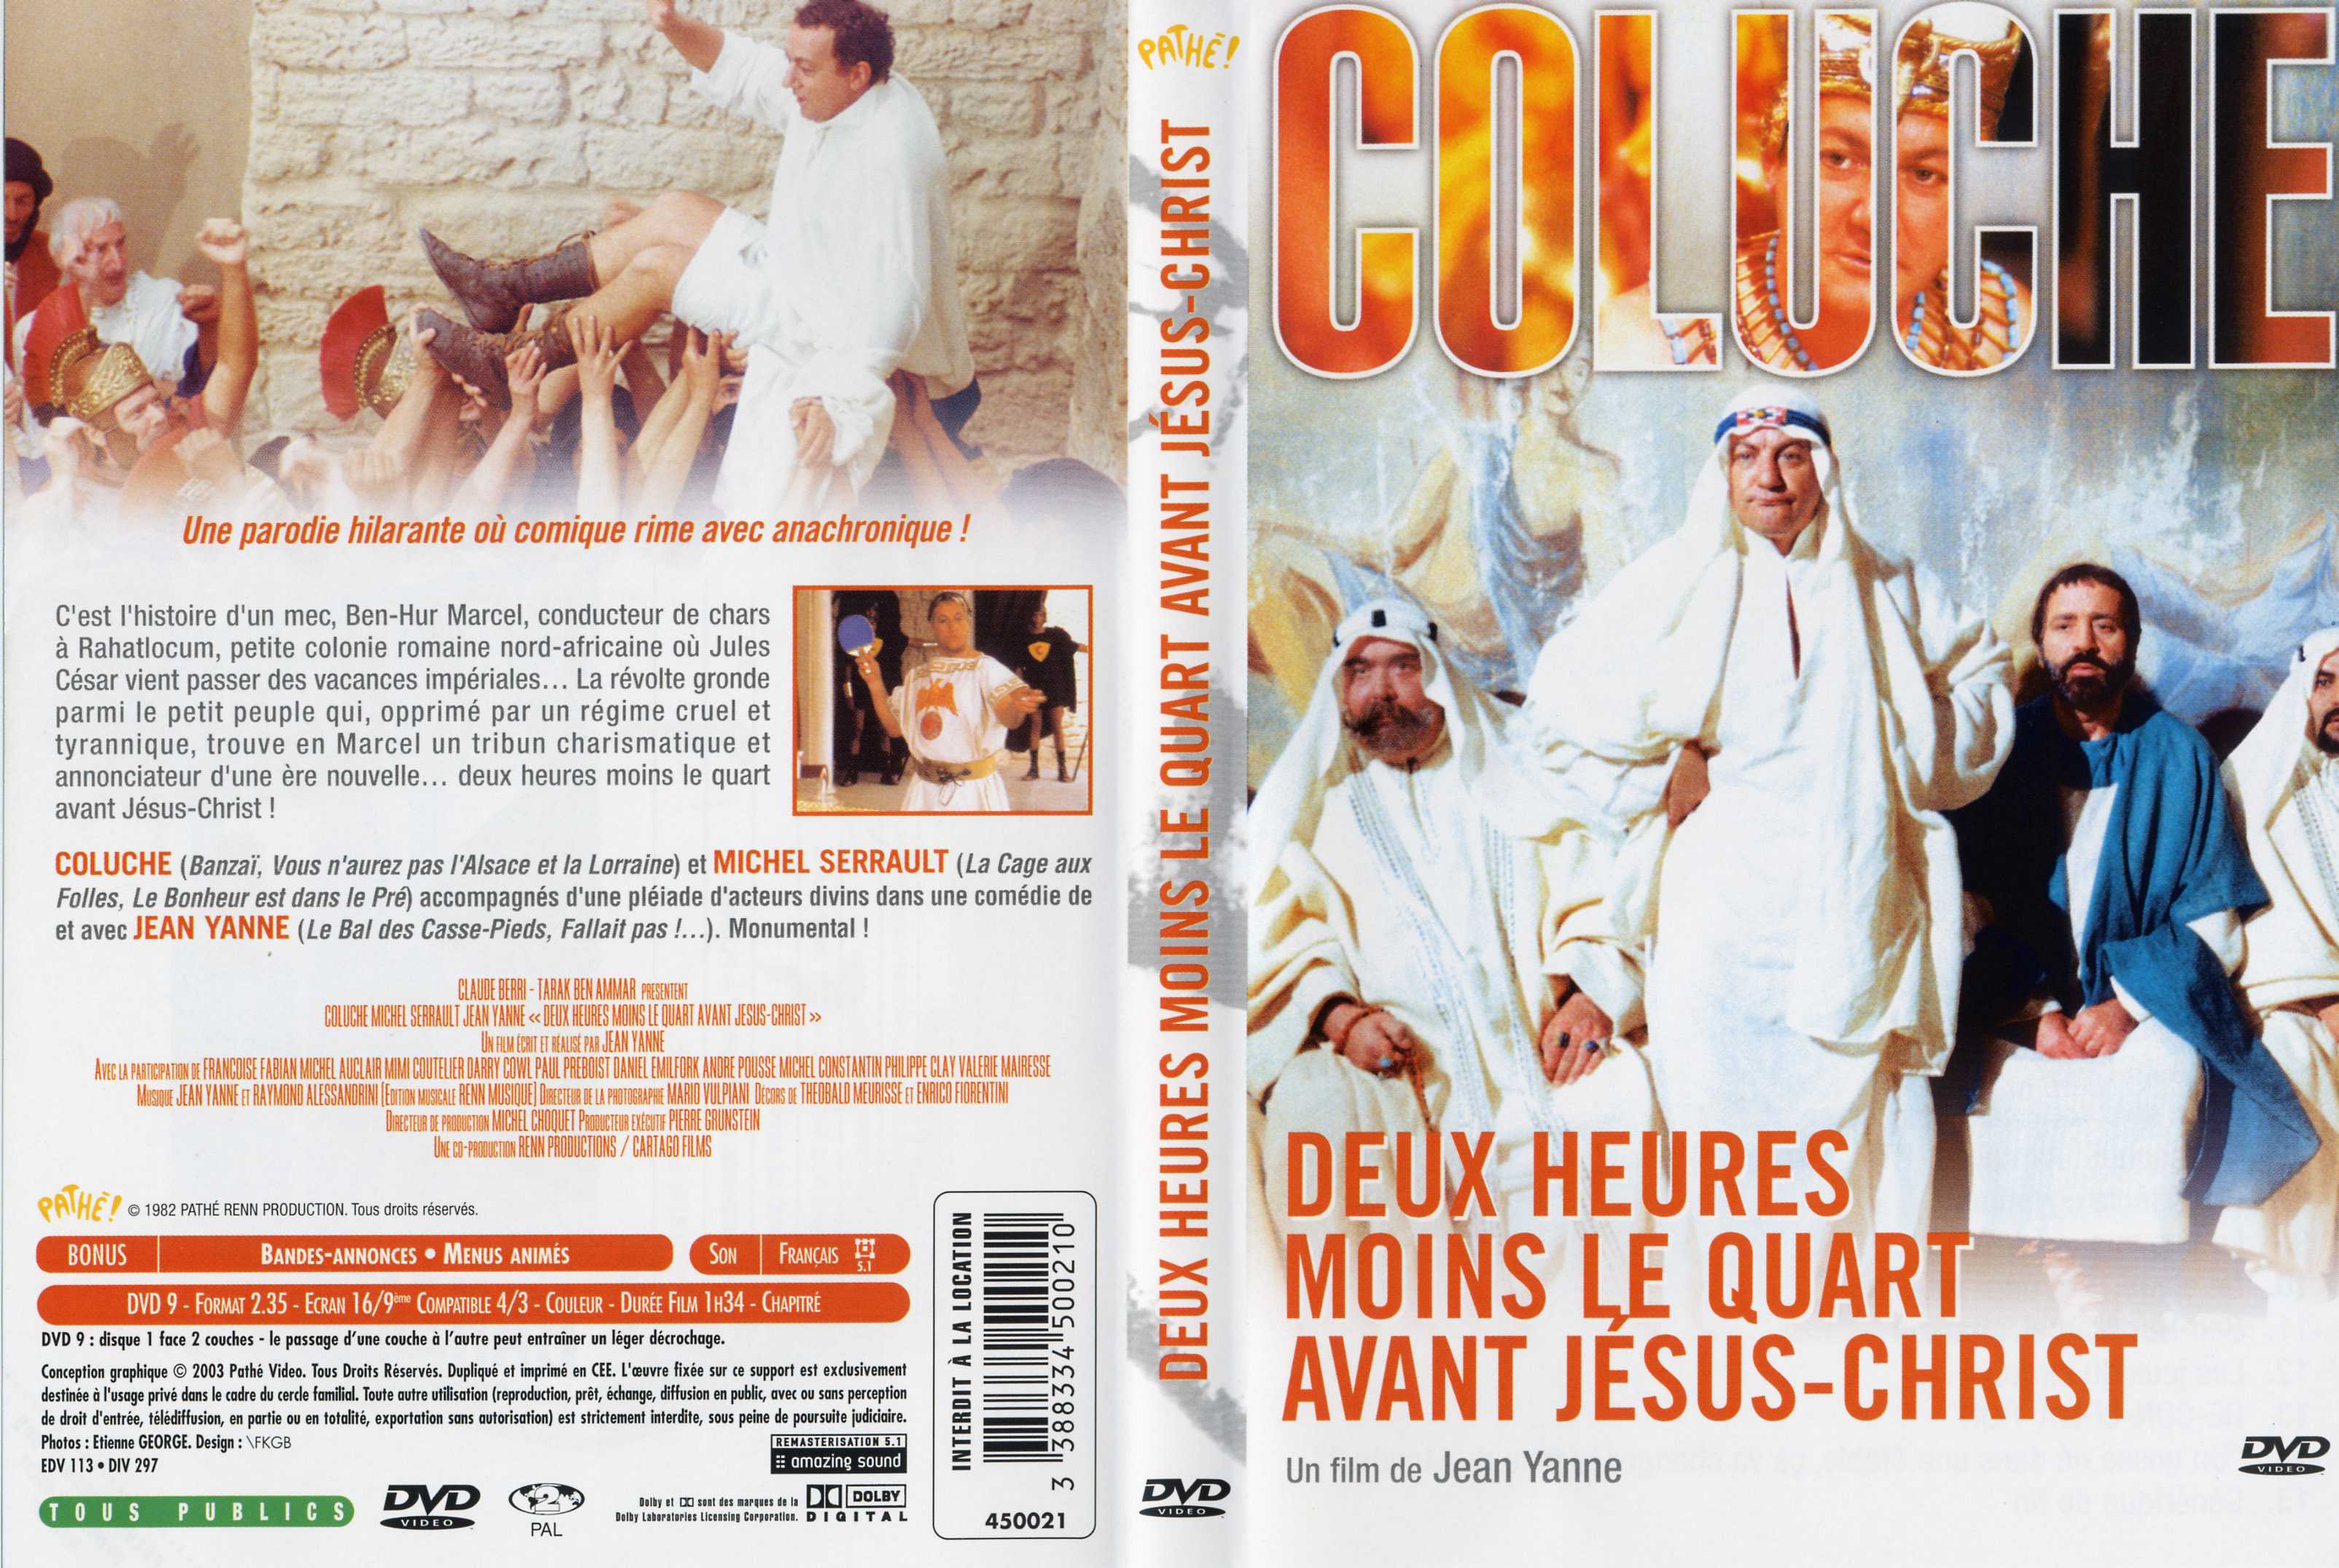 Jaquette DVD Deux heure moins le quart avant jesus christ